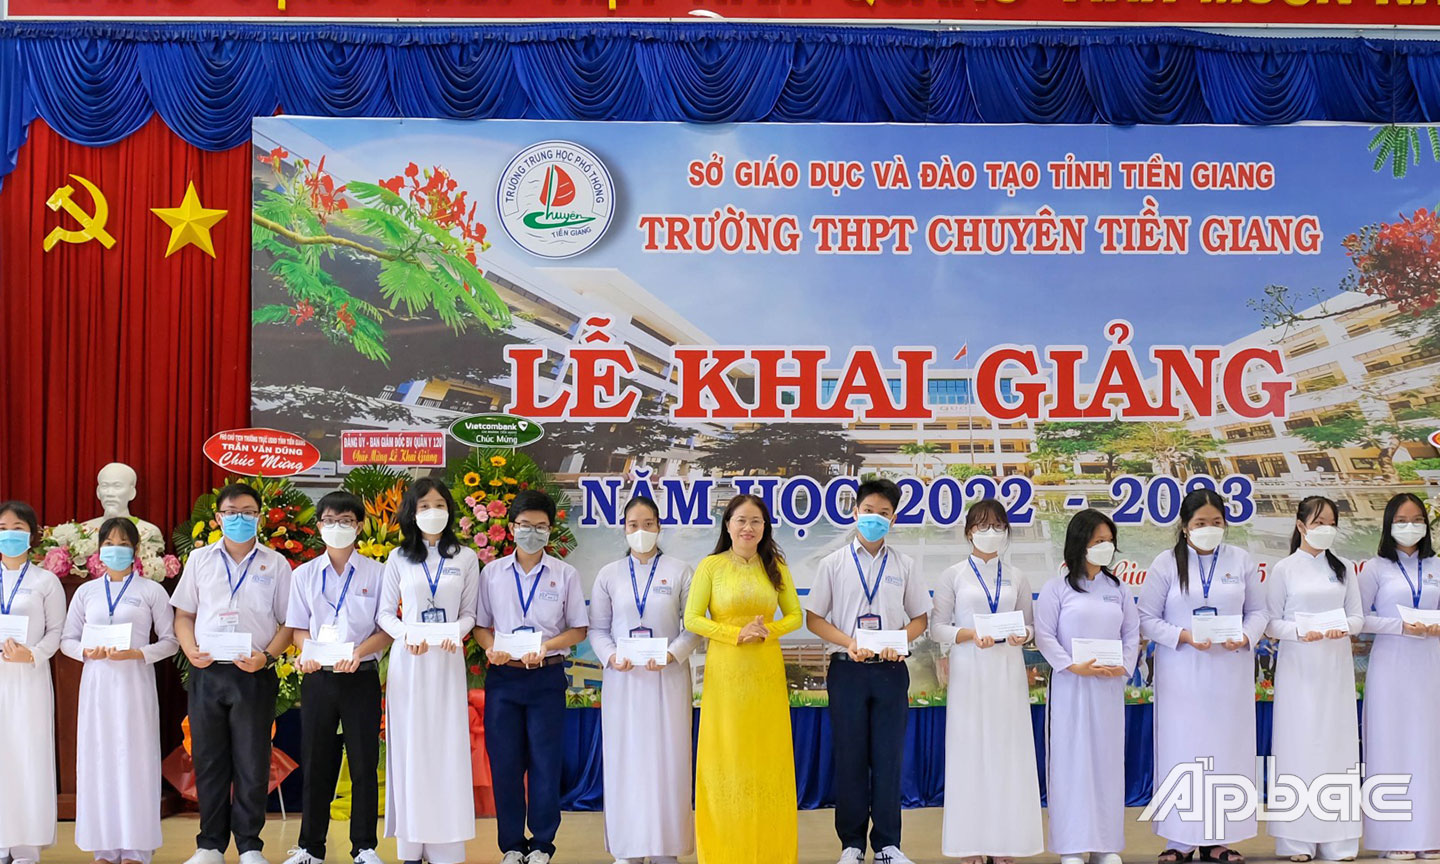 Bà Nguyễn Thị Tuyết – Giám đốc Vietcombank Tiền Giang (đứng thứ 10 từ phải sang) trao học bổng tại trường THPT chuyên Tiền Giang